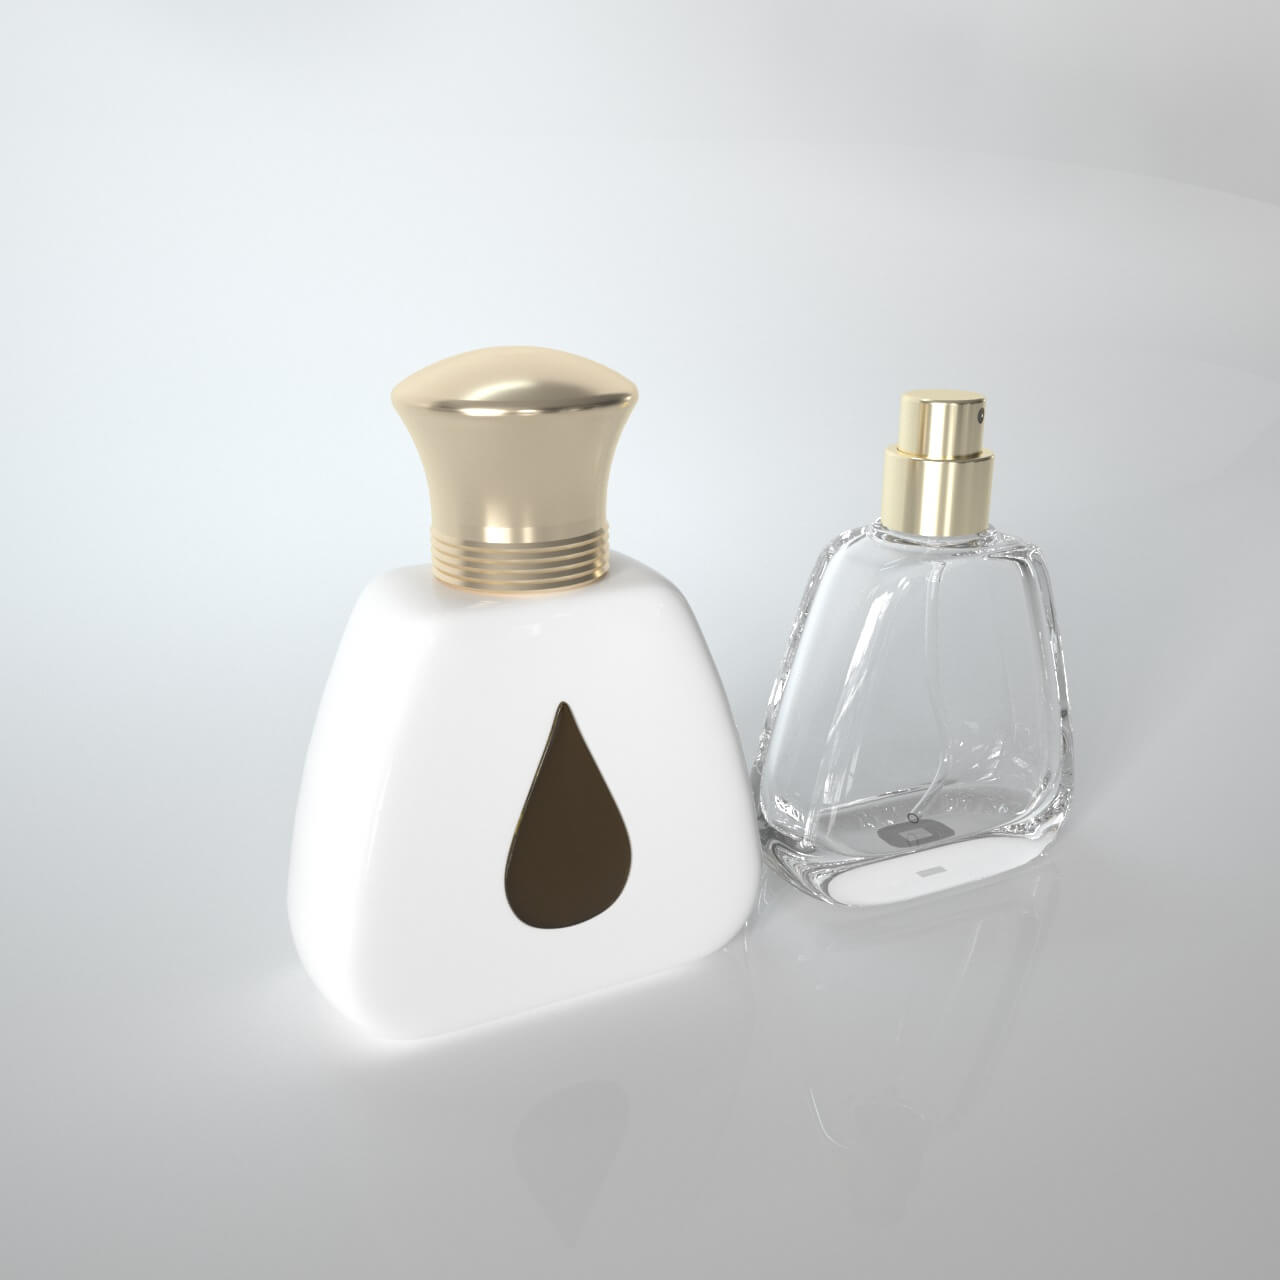 Drop shape perfume bottle (2)